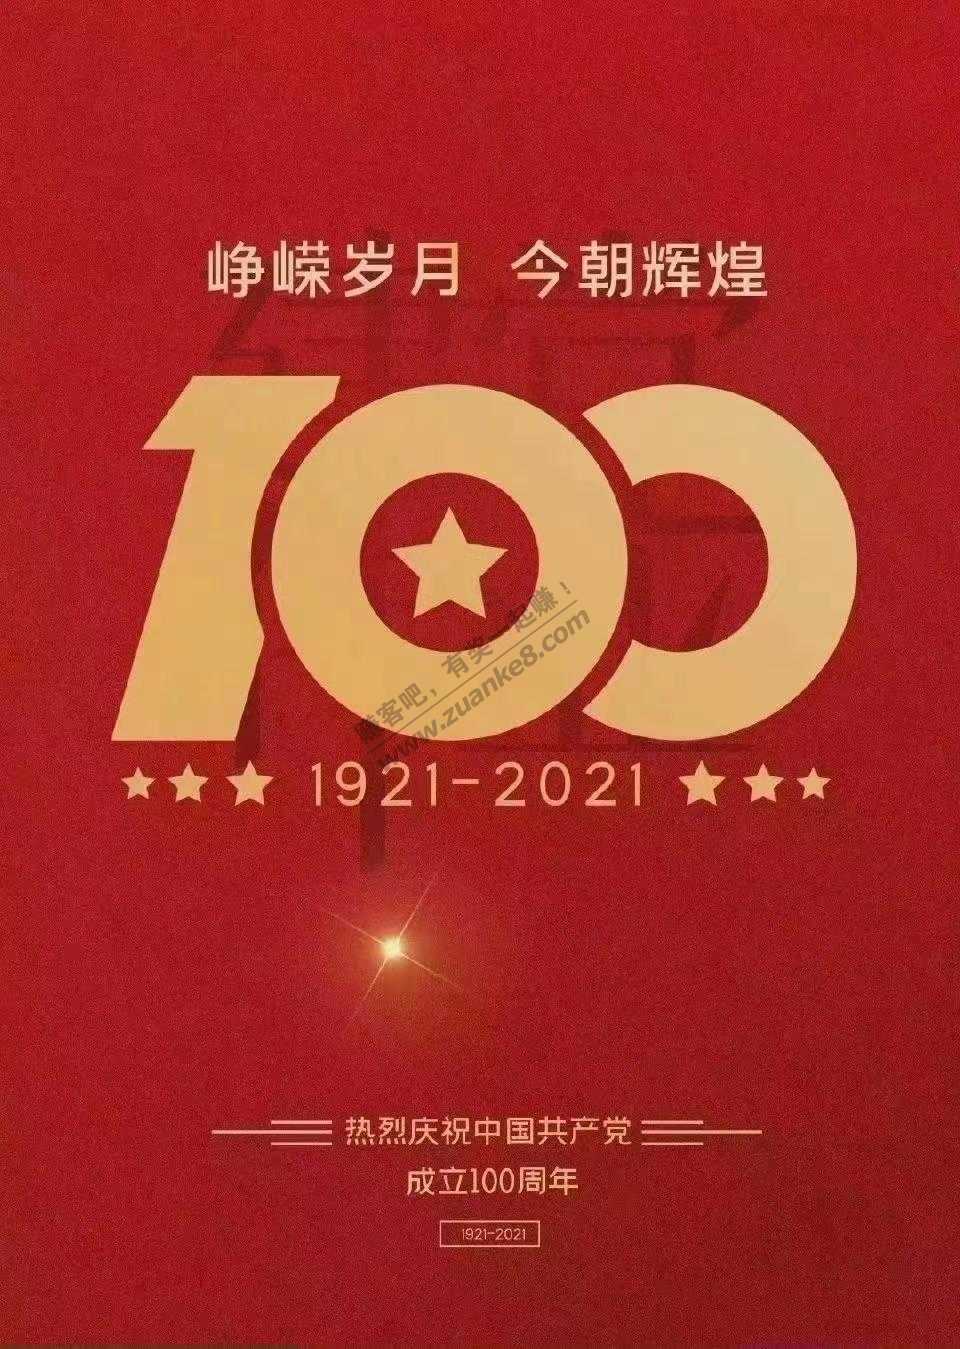 100周年 纪念下-惠小助(52huixz.com)